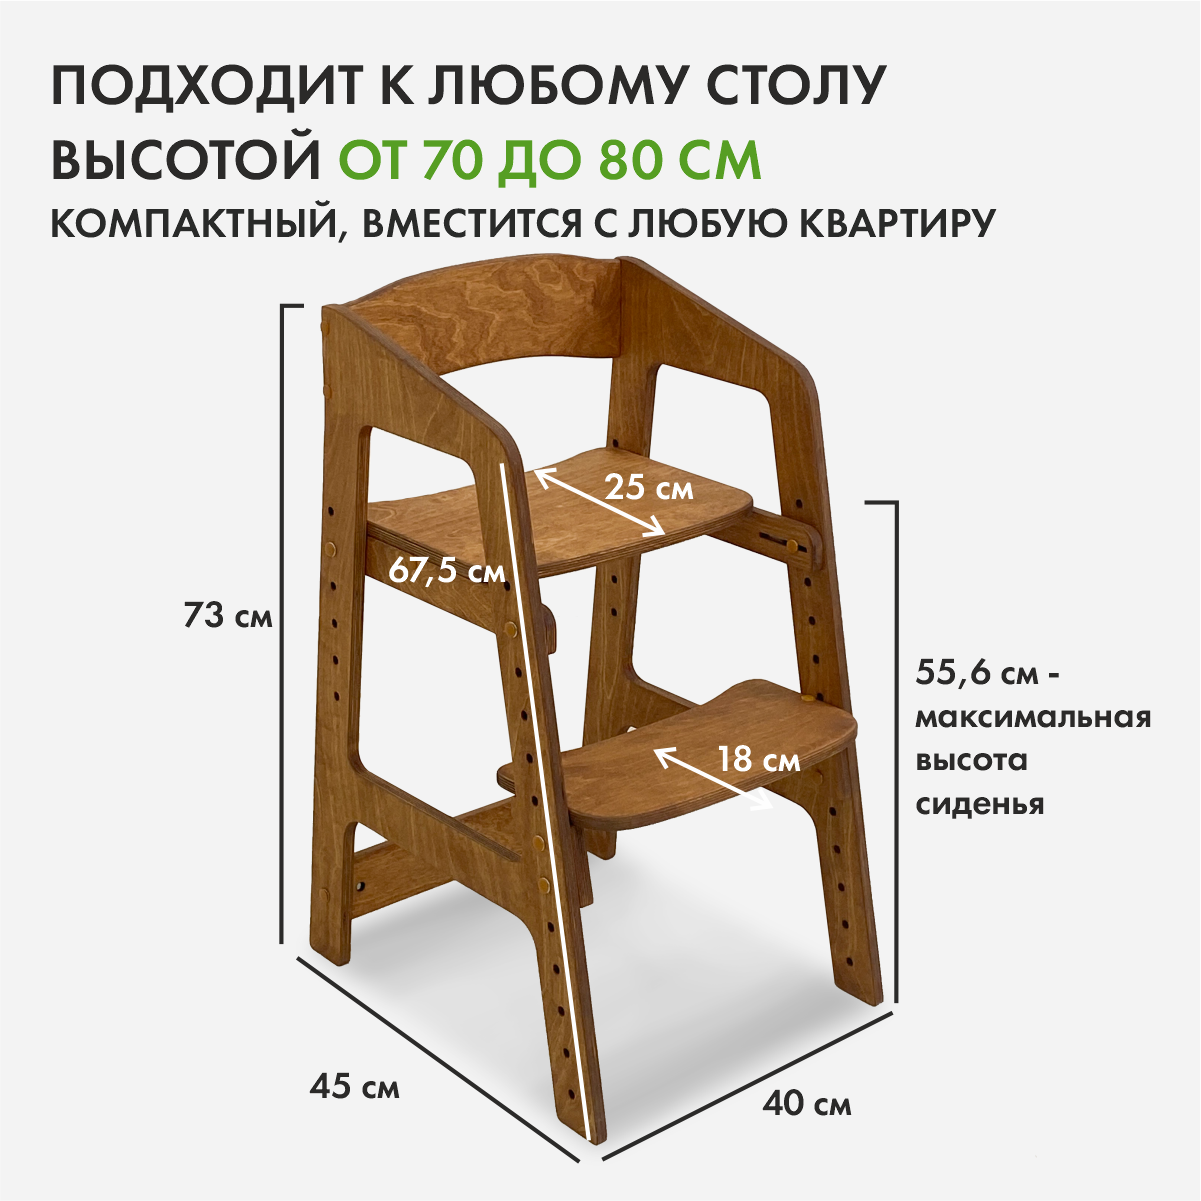 Растущий стульчик “Непоседа” для детей от 2 до 10 лет, цвет Золотой дуб